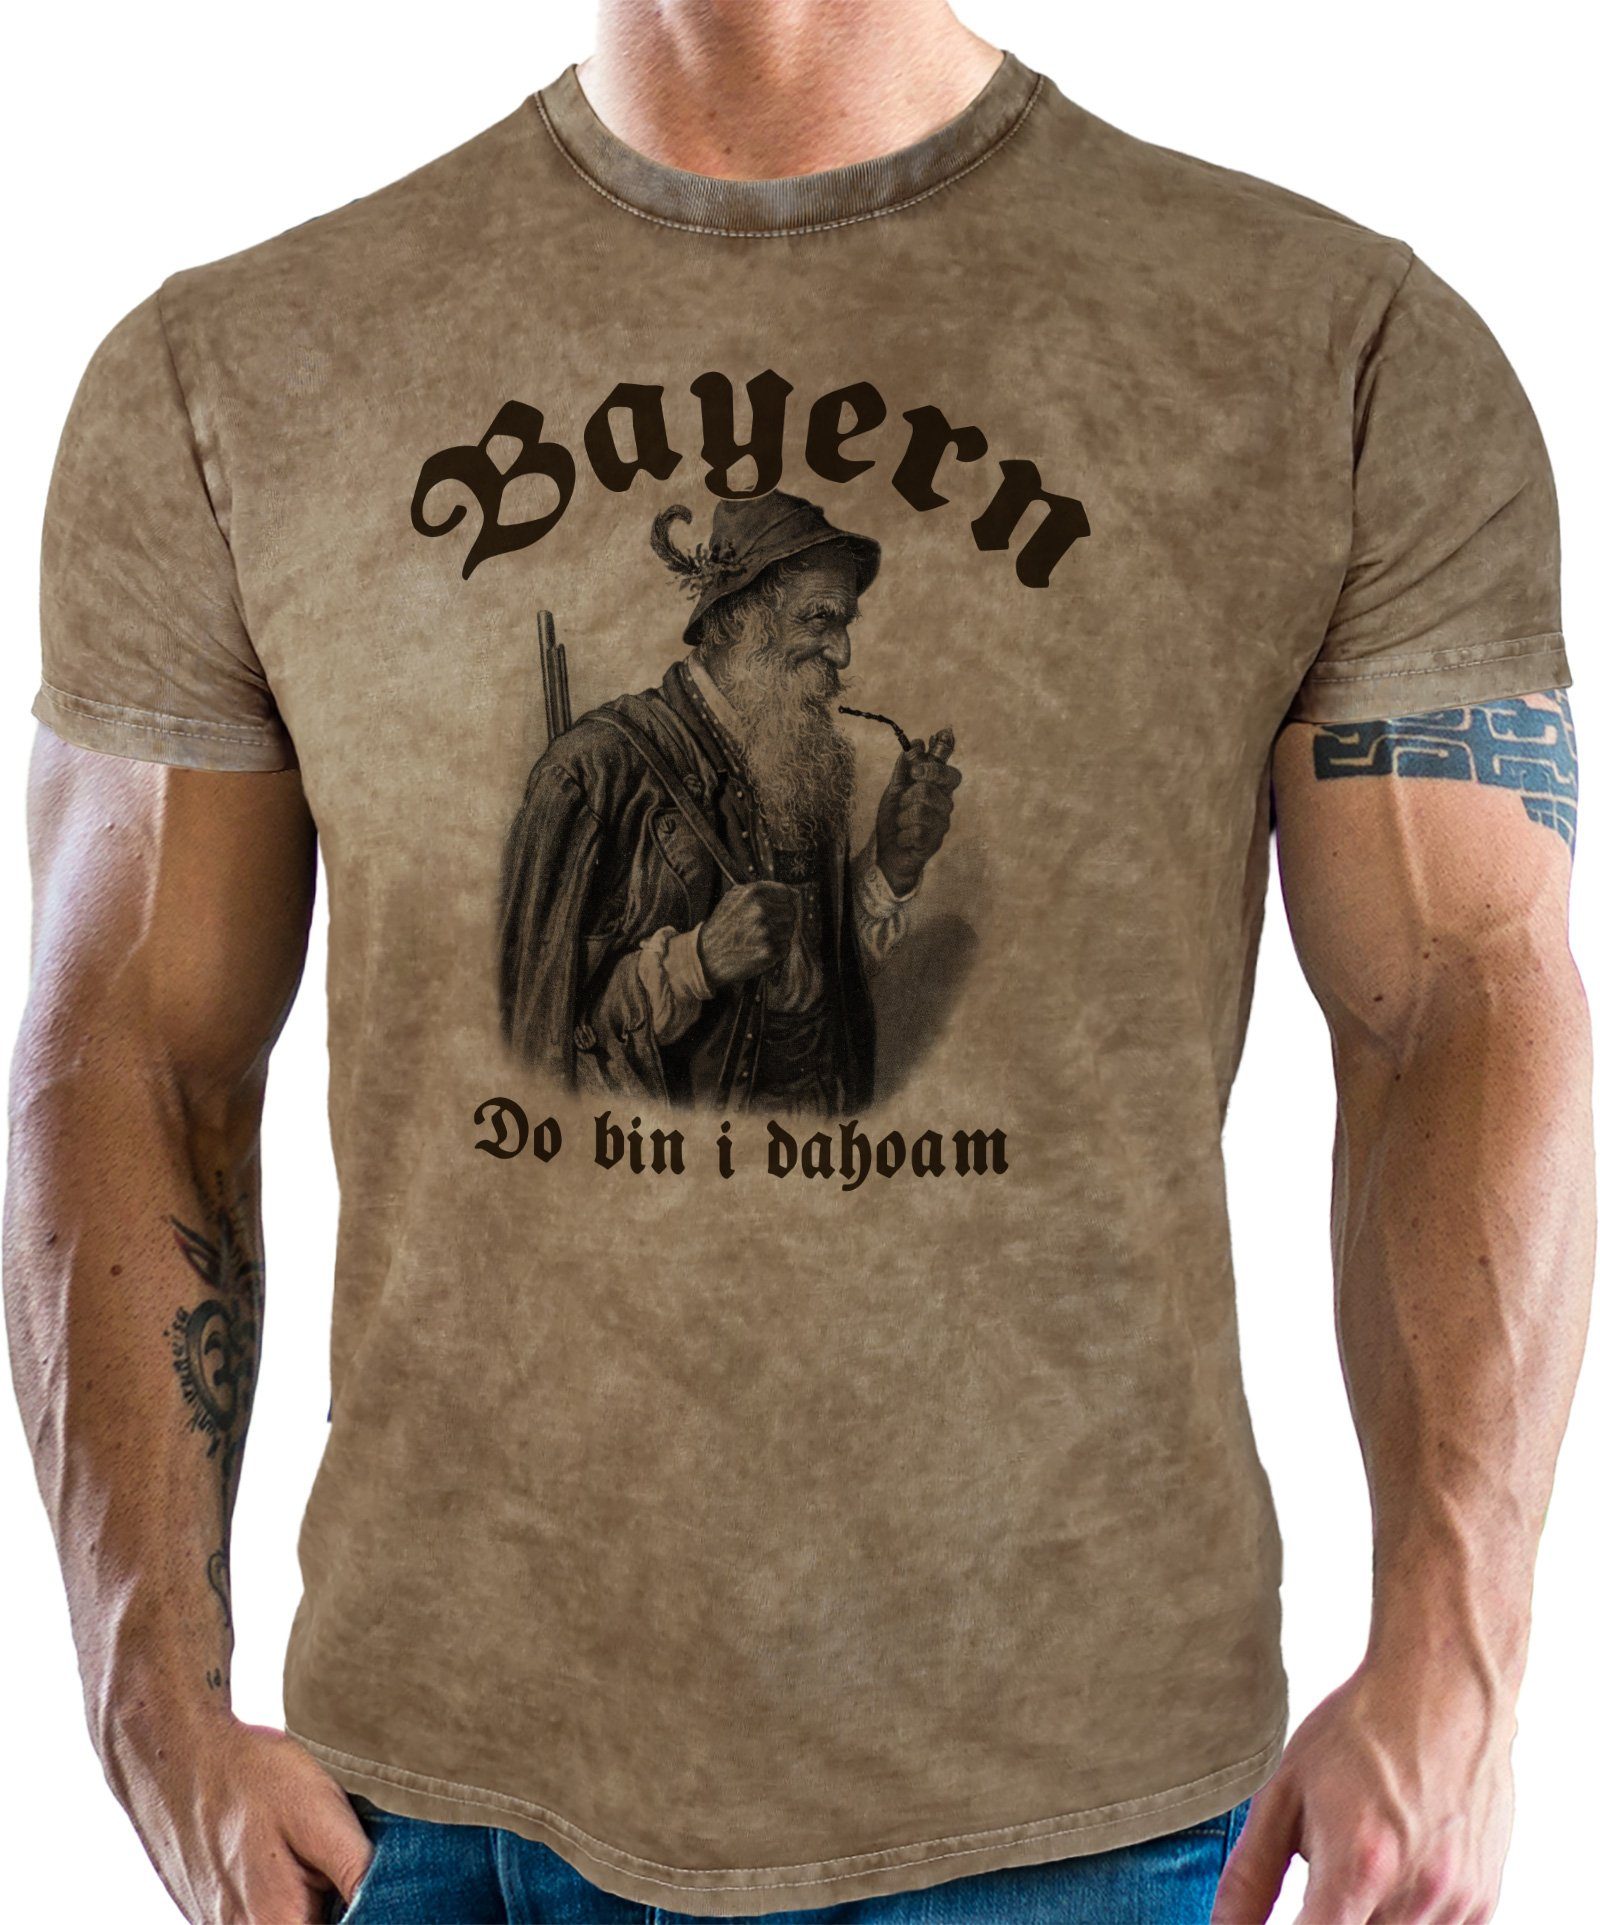 LOBO NEGRO® T-Shirt für Trachten Bayern Fans im Used Vintage Retro Look - Do bin i Dahoam